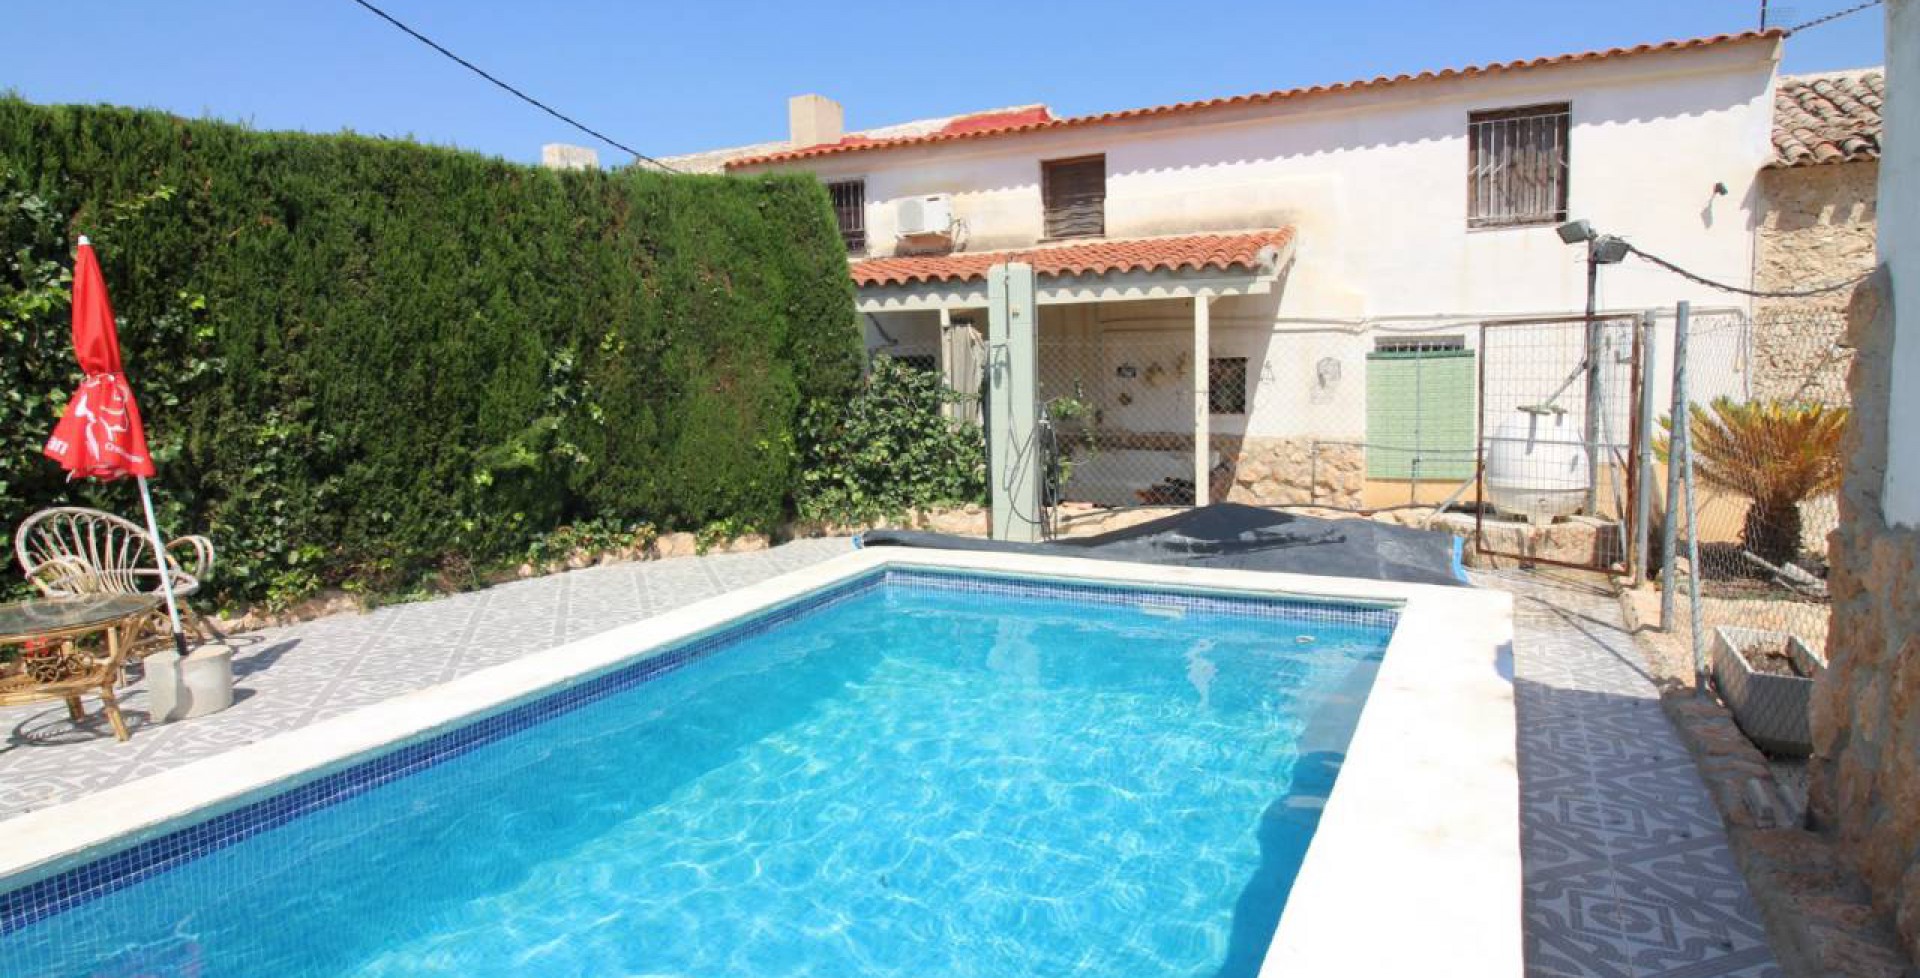 Gran casa de campo con bonita piscina, Ricote, Murcia, Spain